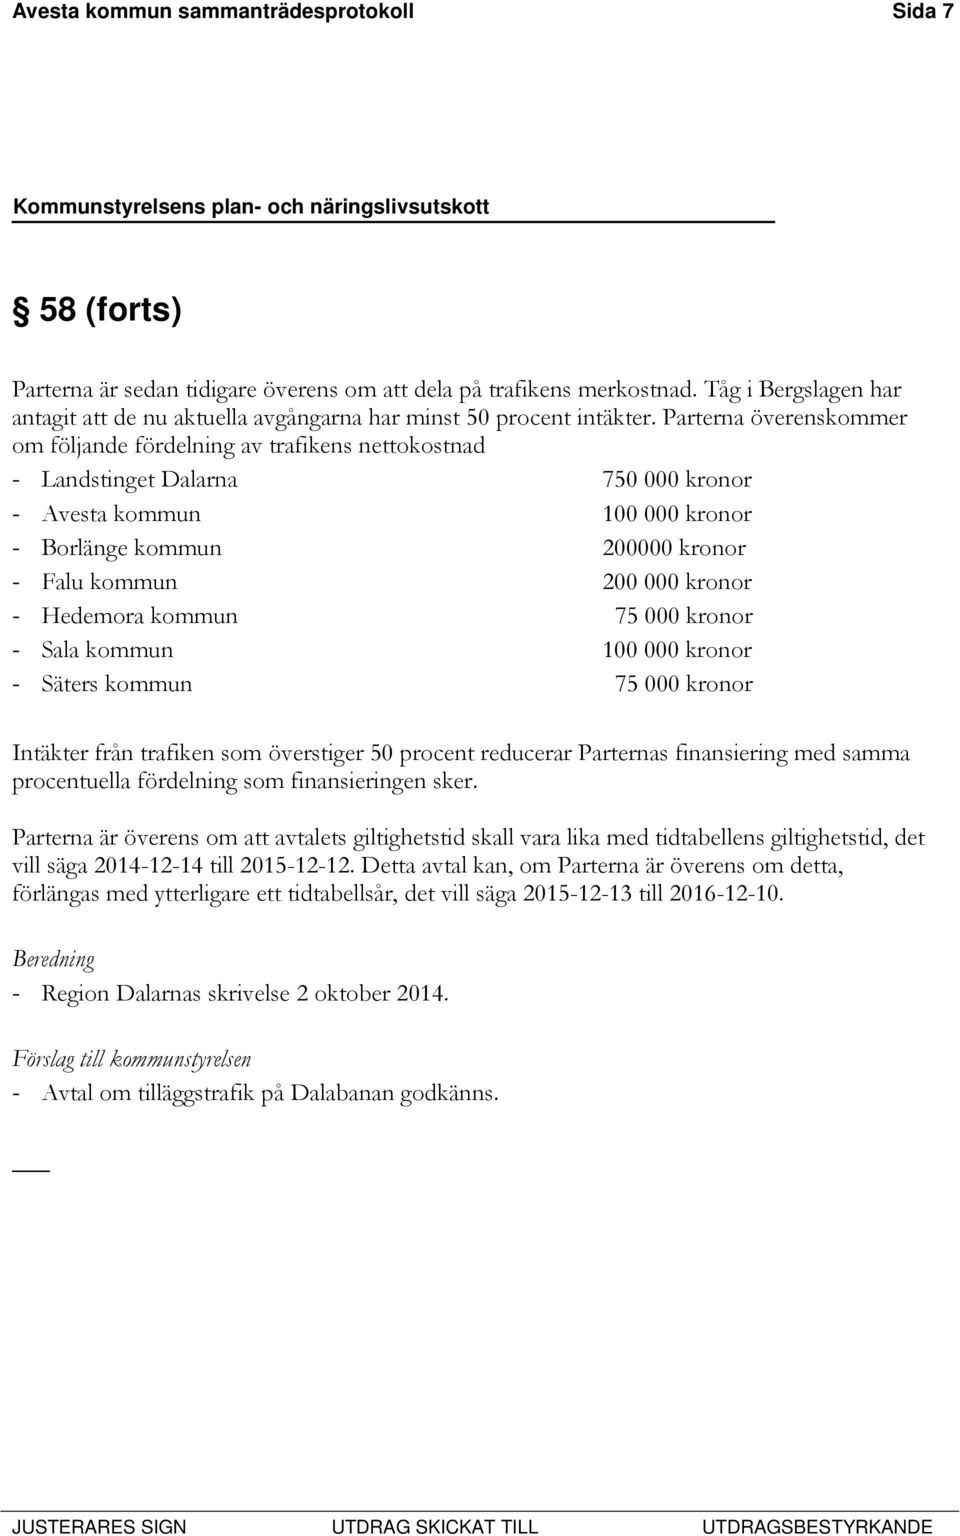 Parterna överenskommer om följande fördelning av trafikens nettokostnad - Landstinget Dalarna 750 000 kronor - Avesta kommun 100 000 kronor - Borlänge kommun 200000 kronor - Falu kommun 200 000